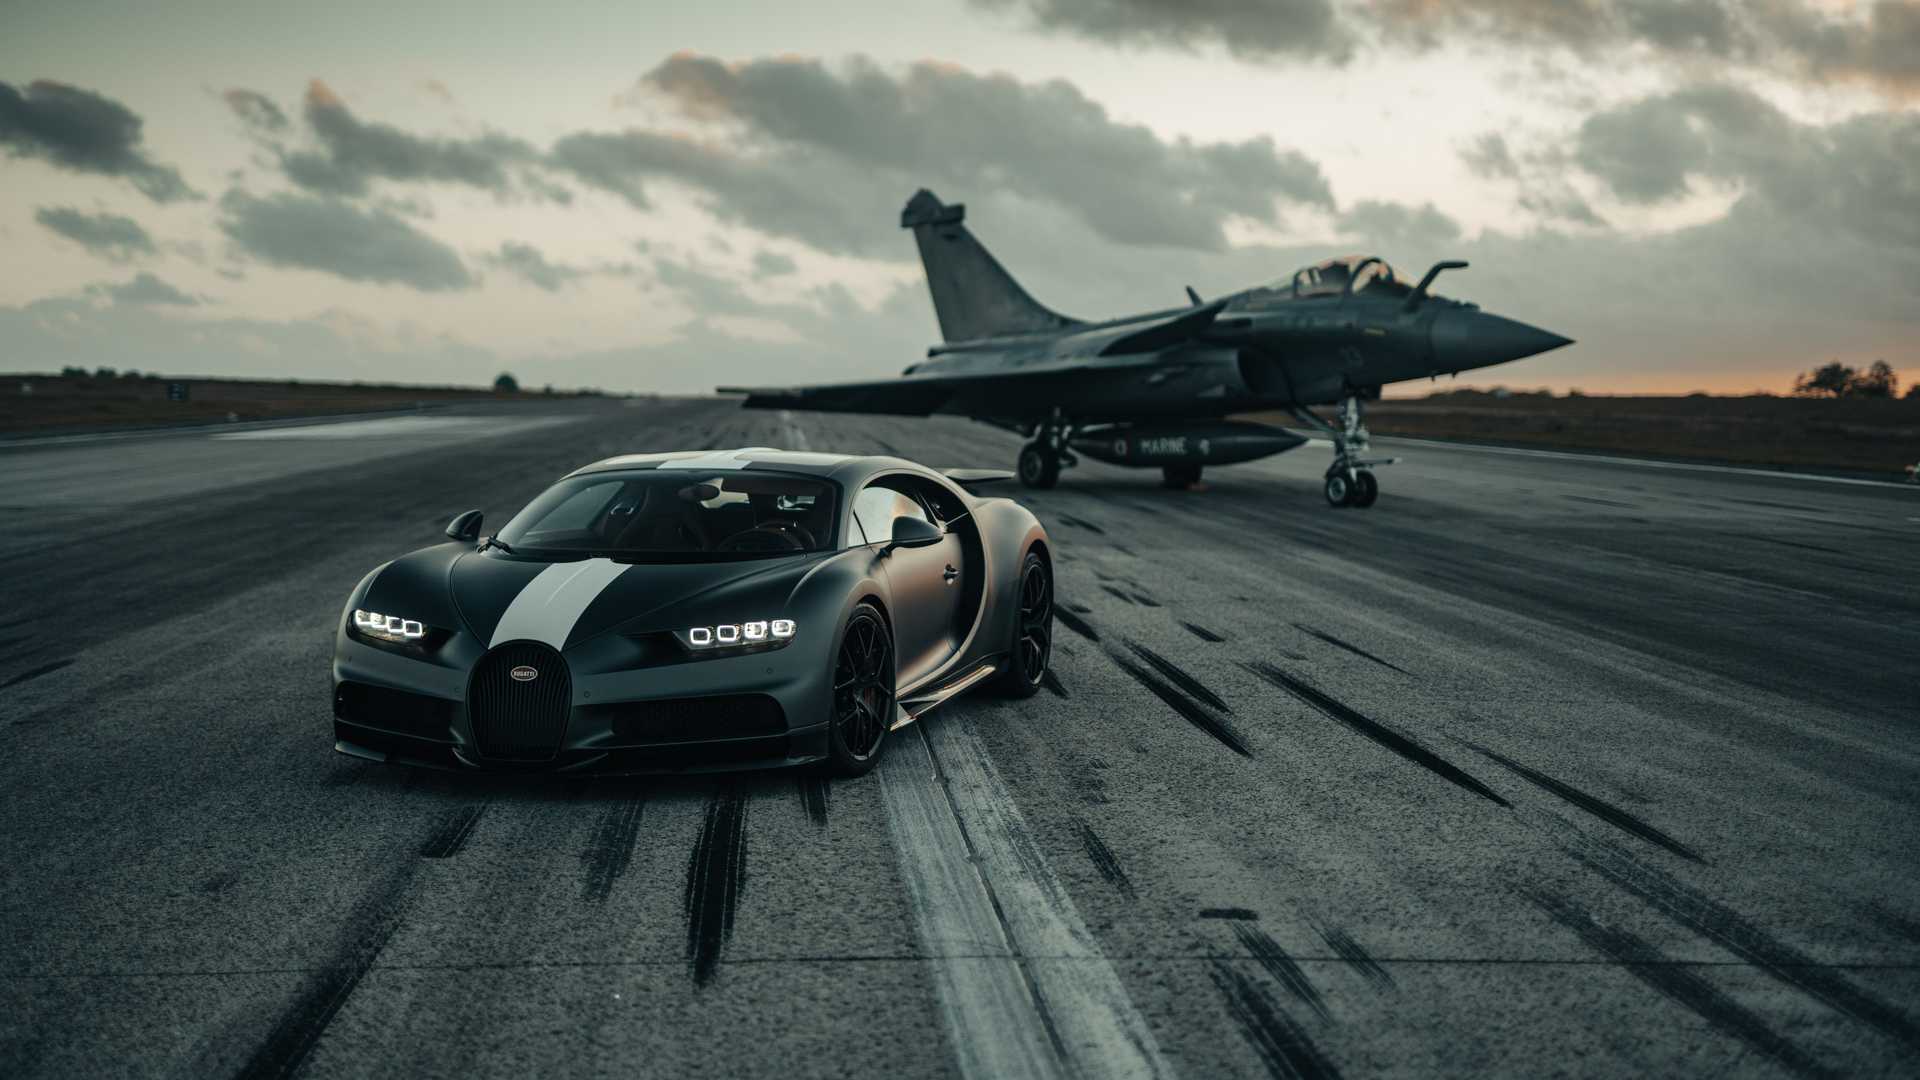 Đam mê đua xe và chiến đấu không chỉ anh hùng trên mặt đất, mà còn khi được chinh phục đường đua với siêu xe Bugatti và đối đầu với chiếc máy bay chiến đấu. Cùng xem cái kết bất ngờ khi hai thế giới tuyệt vời này giao đấu như thế nào!